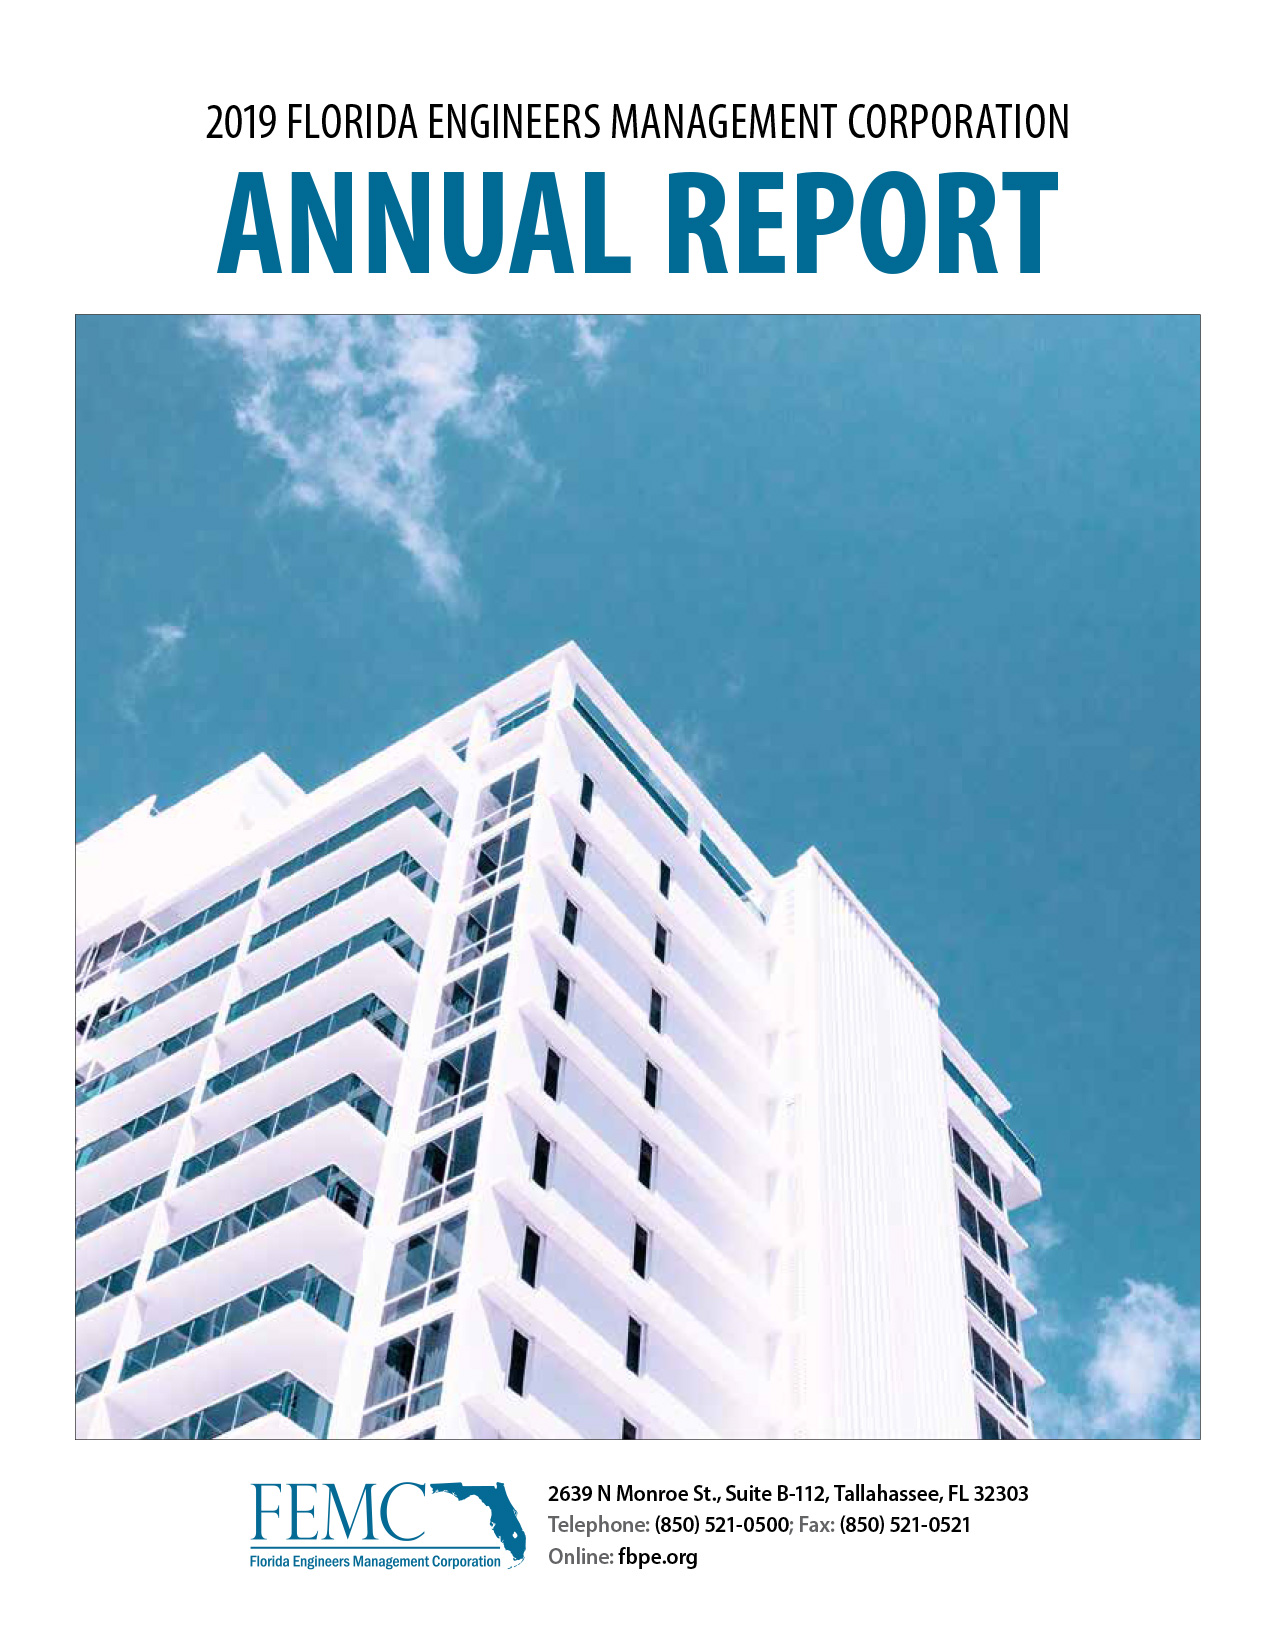 2018-19 FEMC Annual Report